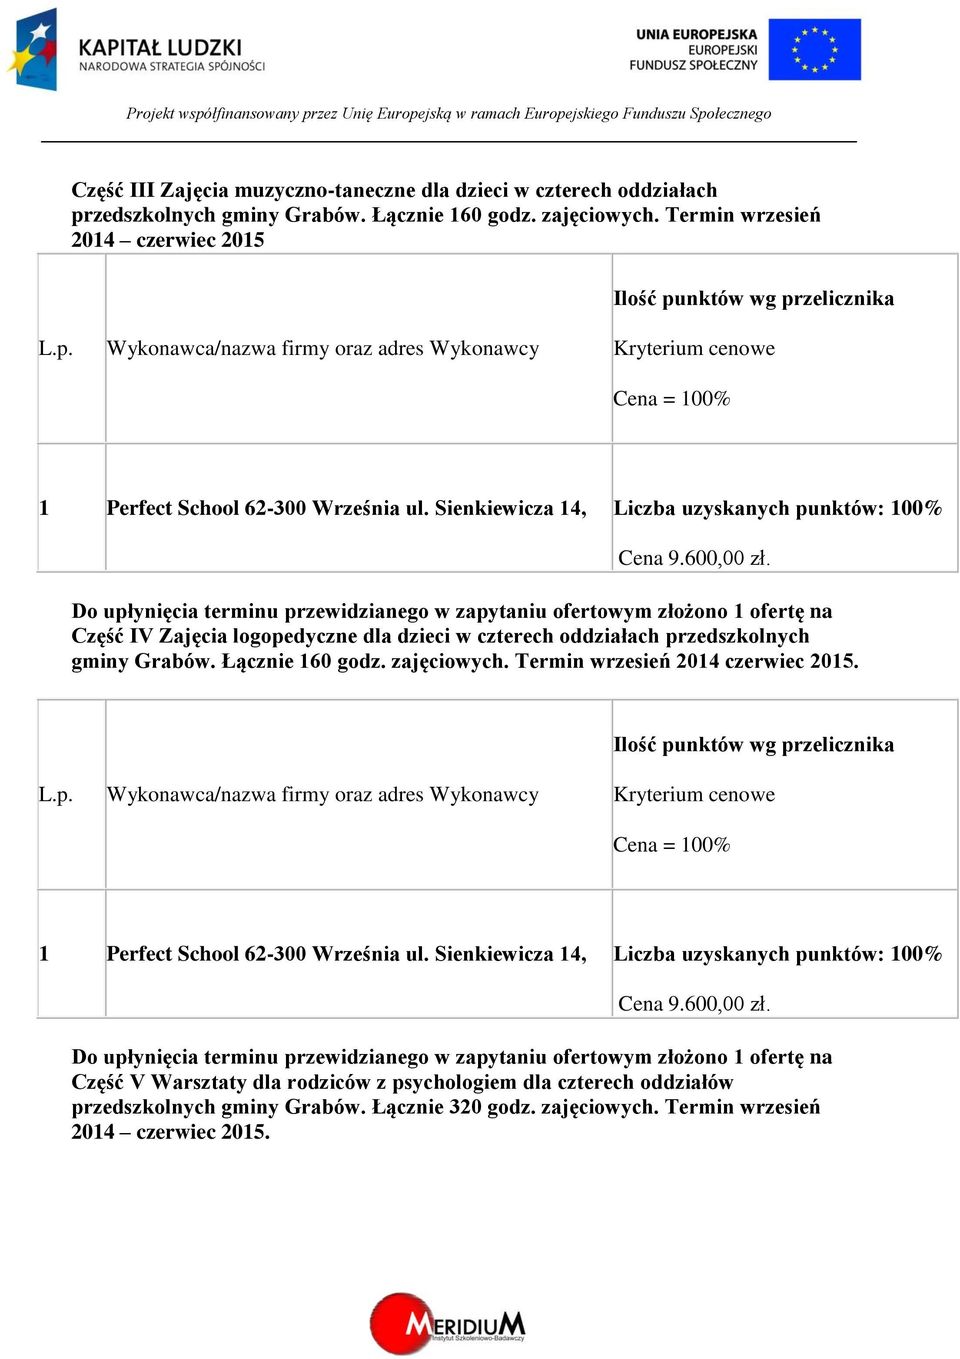 Część IV Zajęcia logopedyczne dla dzieci w czterech oddziałach przedszkolnych gminy Grabów. Łącznie 160 godz. zajęciowych.